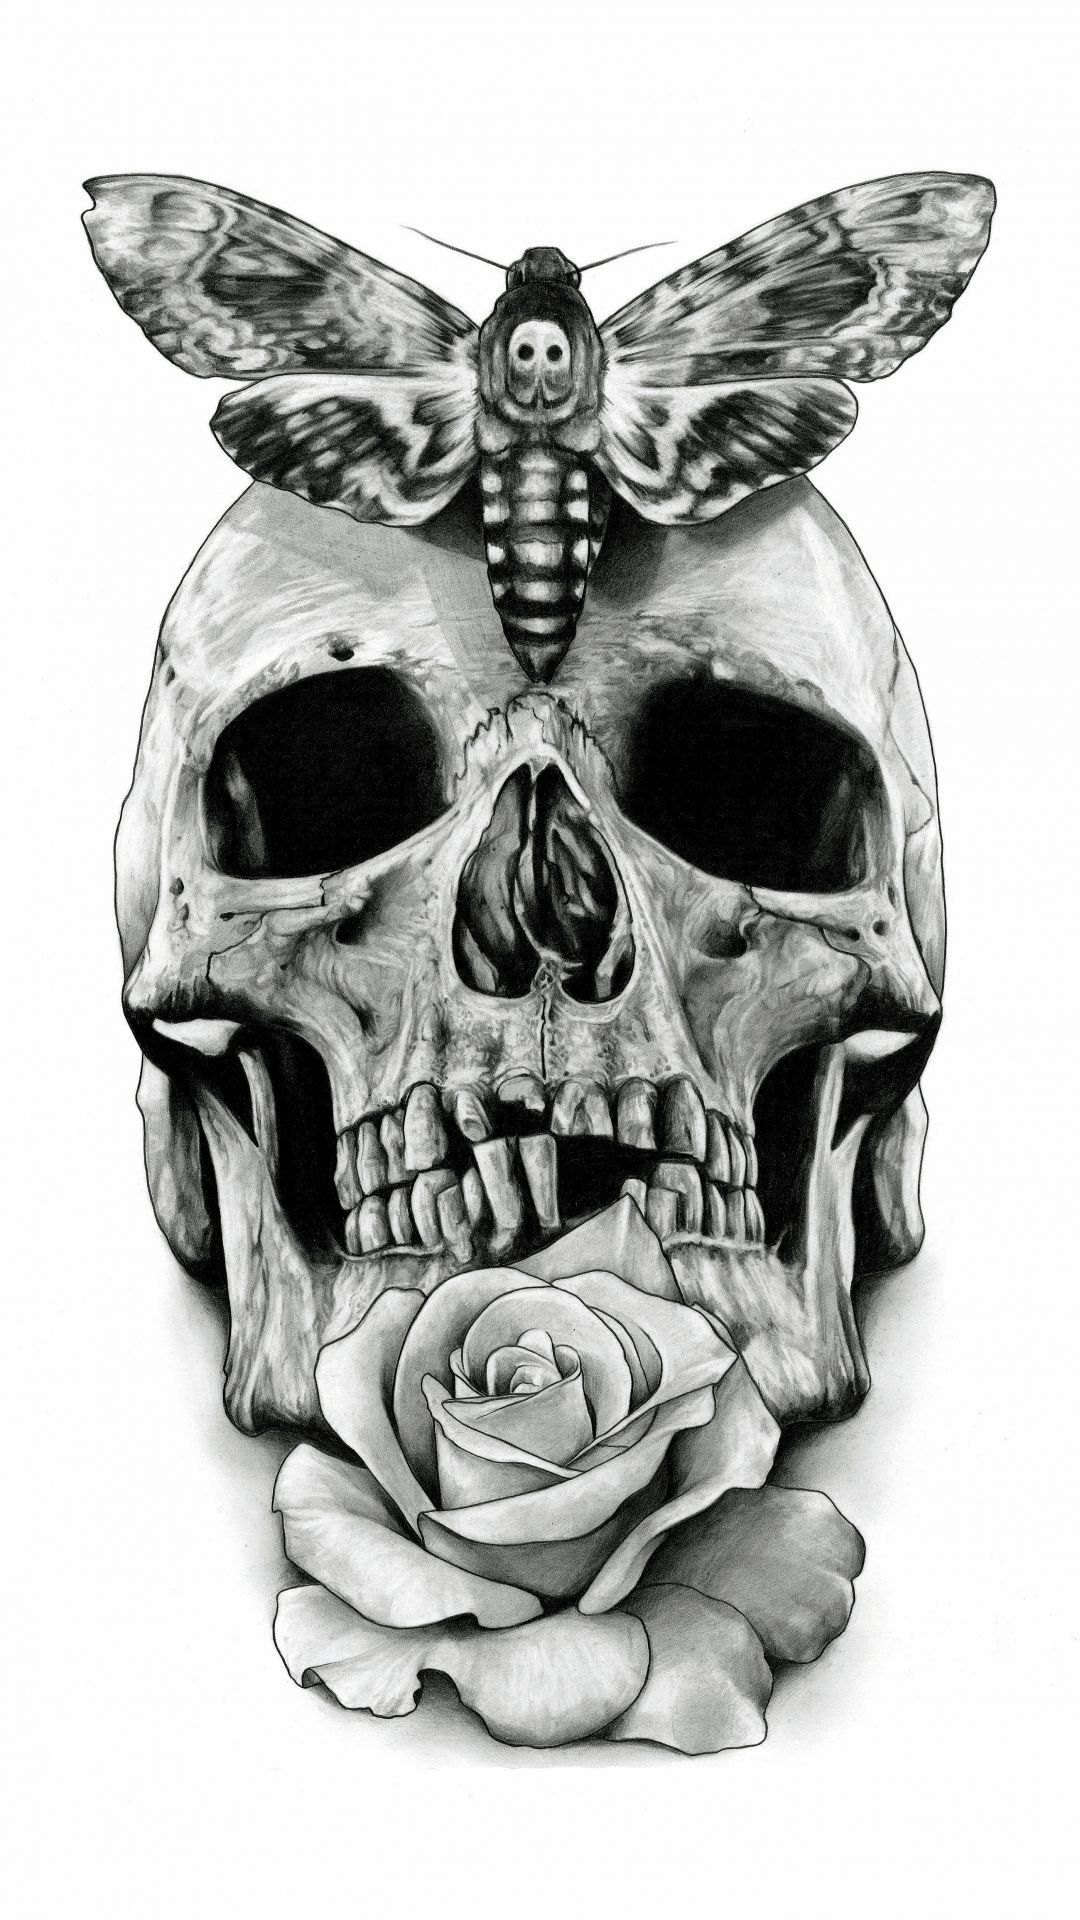 Cool Skull HD wallpaper for mobile